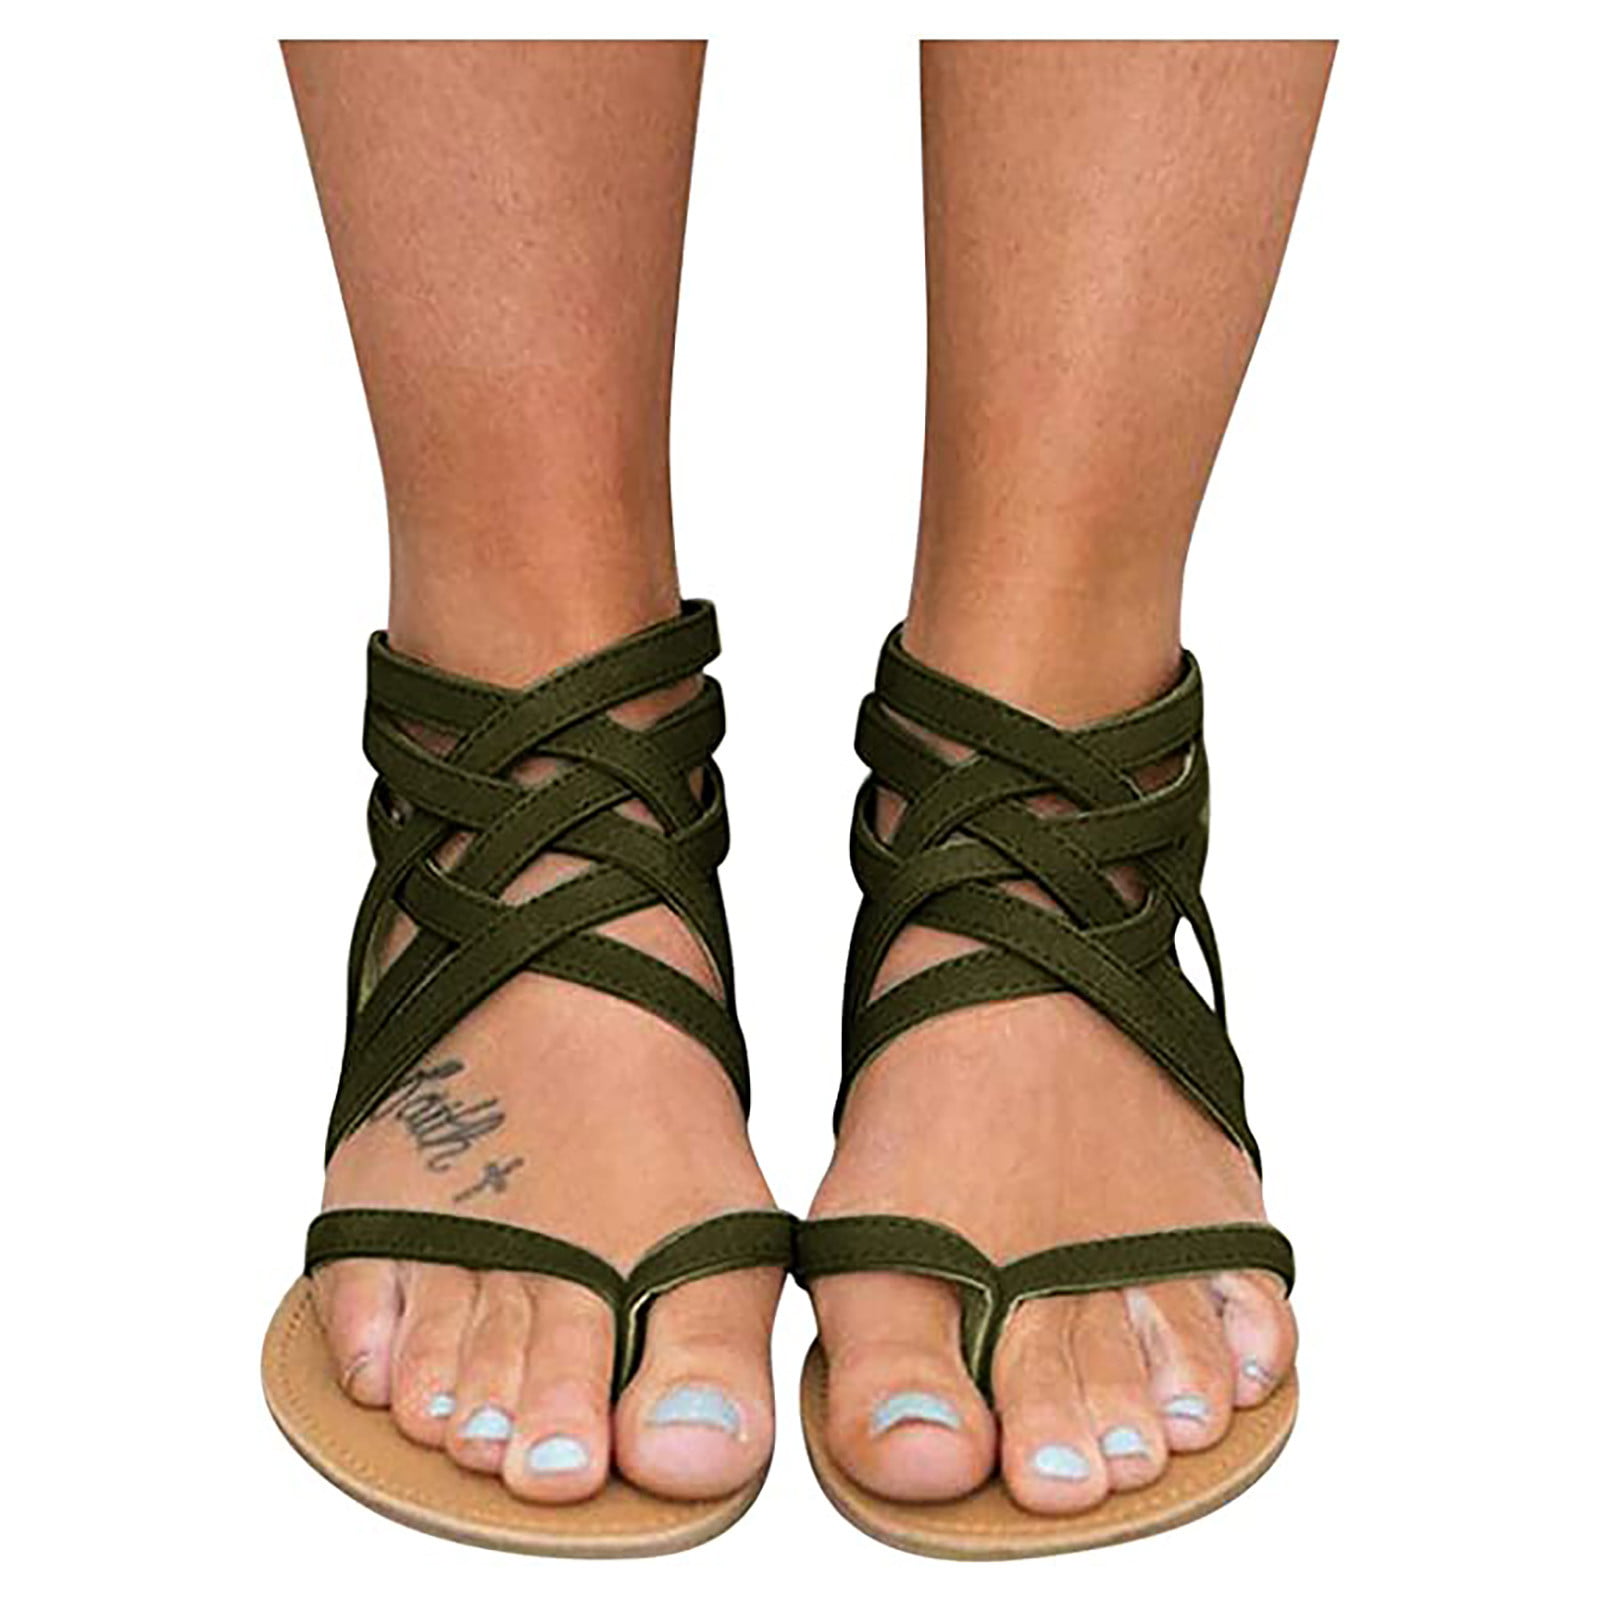 Women Sandals Plus Size Gladiator Sandals for Beach Shoes Woman Rome Flat Sandals Soft Flip Flop,Gray,4.5